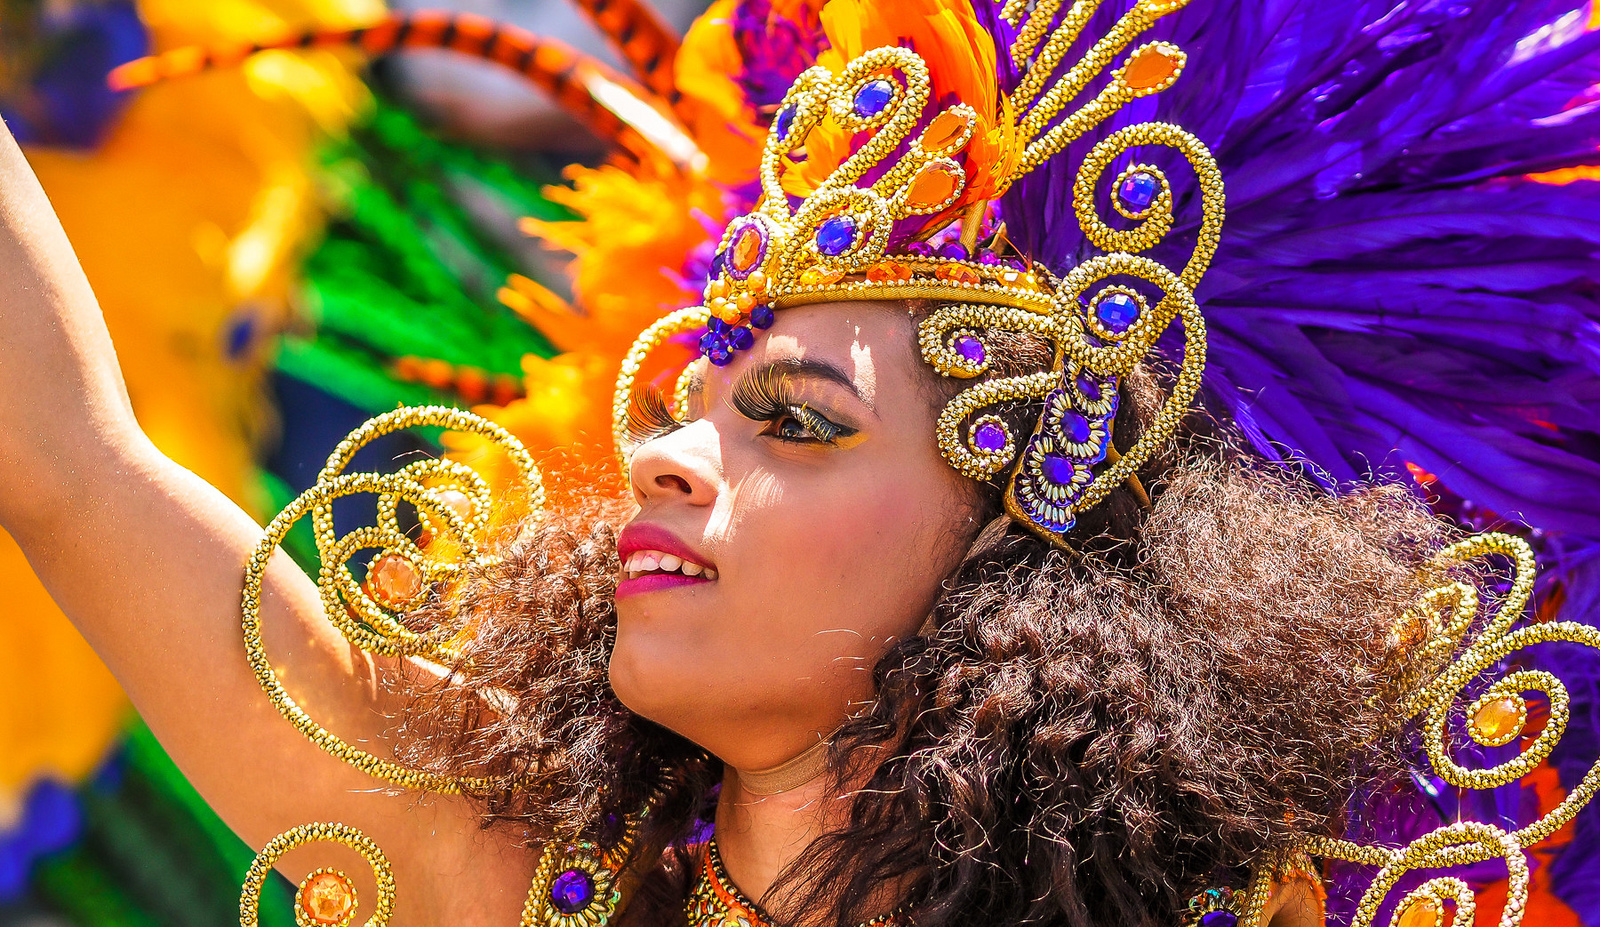 Karneval der Kulturen|Carnival of Cultures